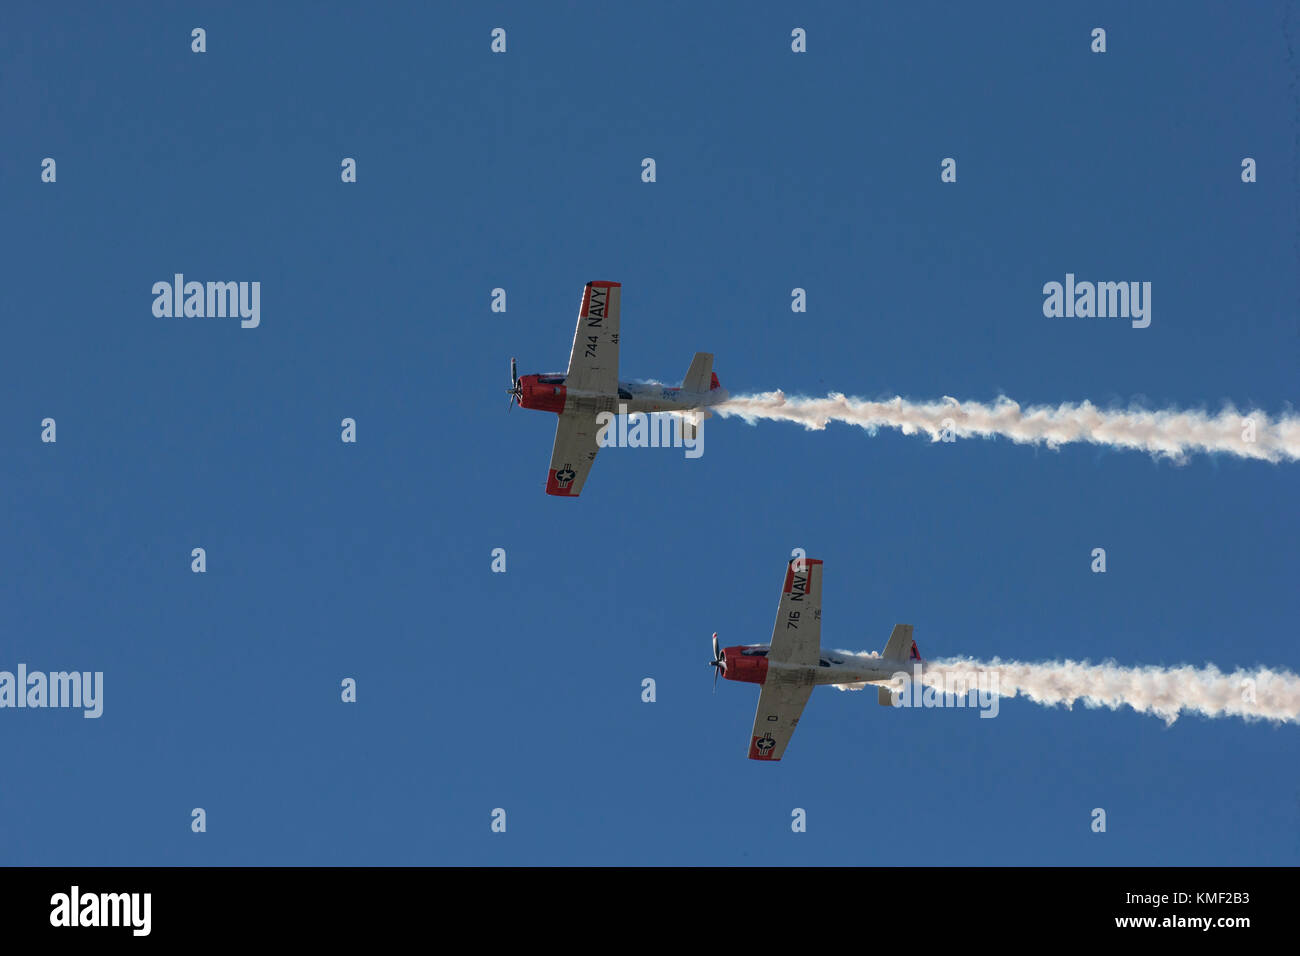 Deux des avions volant avec hélice traînée de fumée dans le ciel bleu profond Banque D'Images